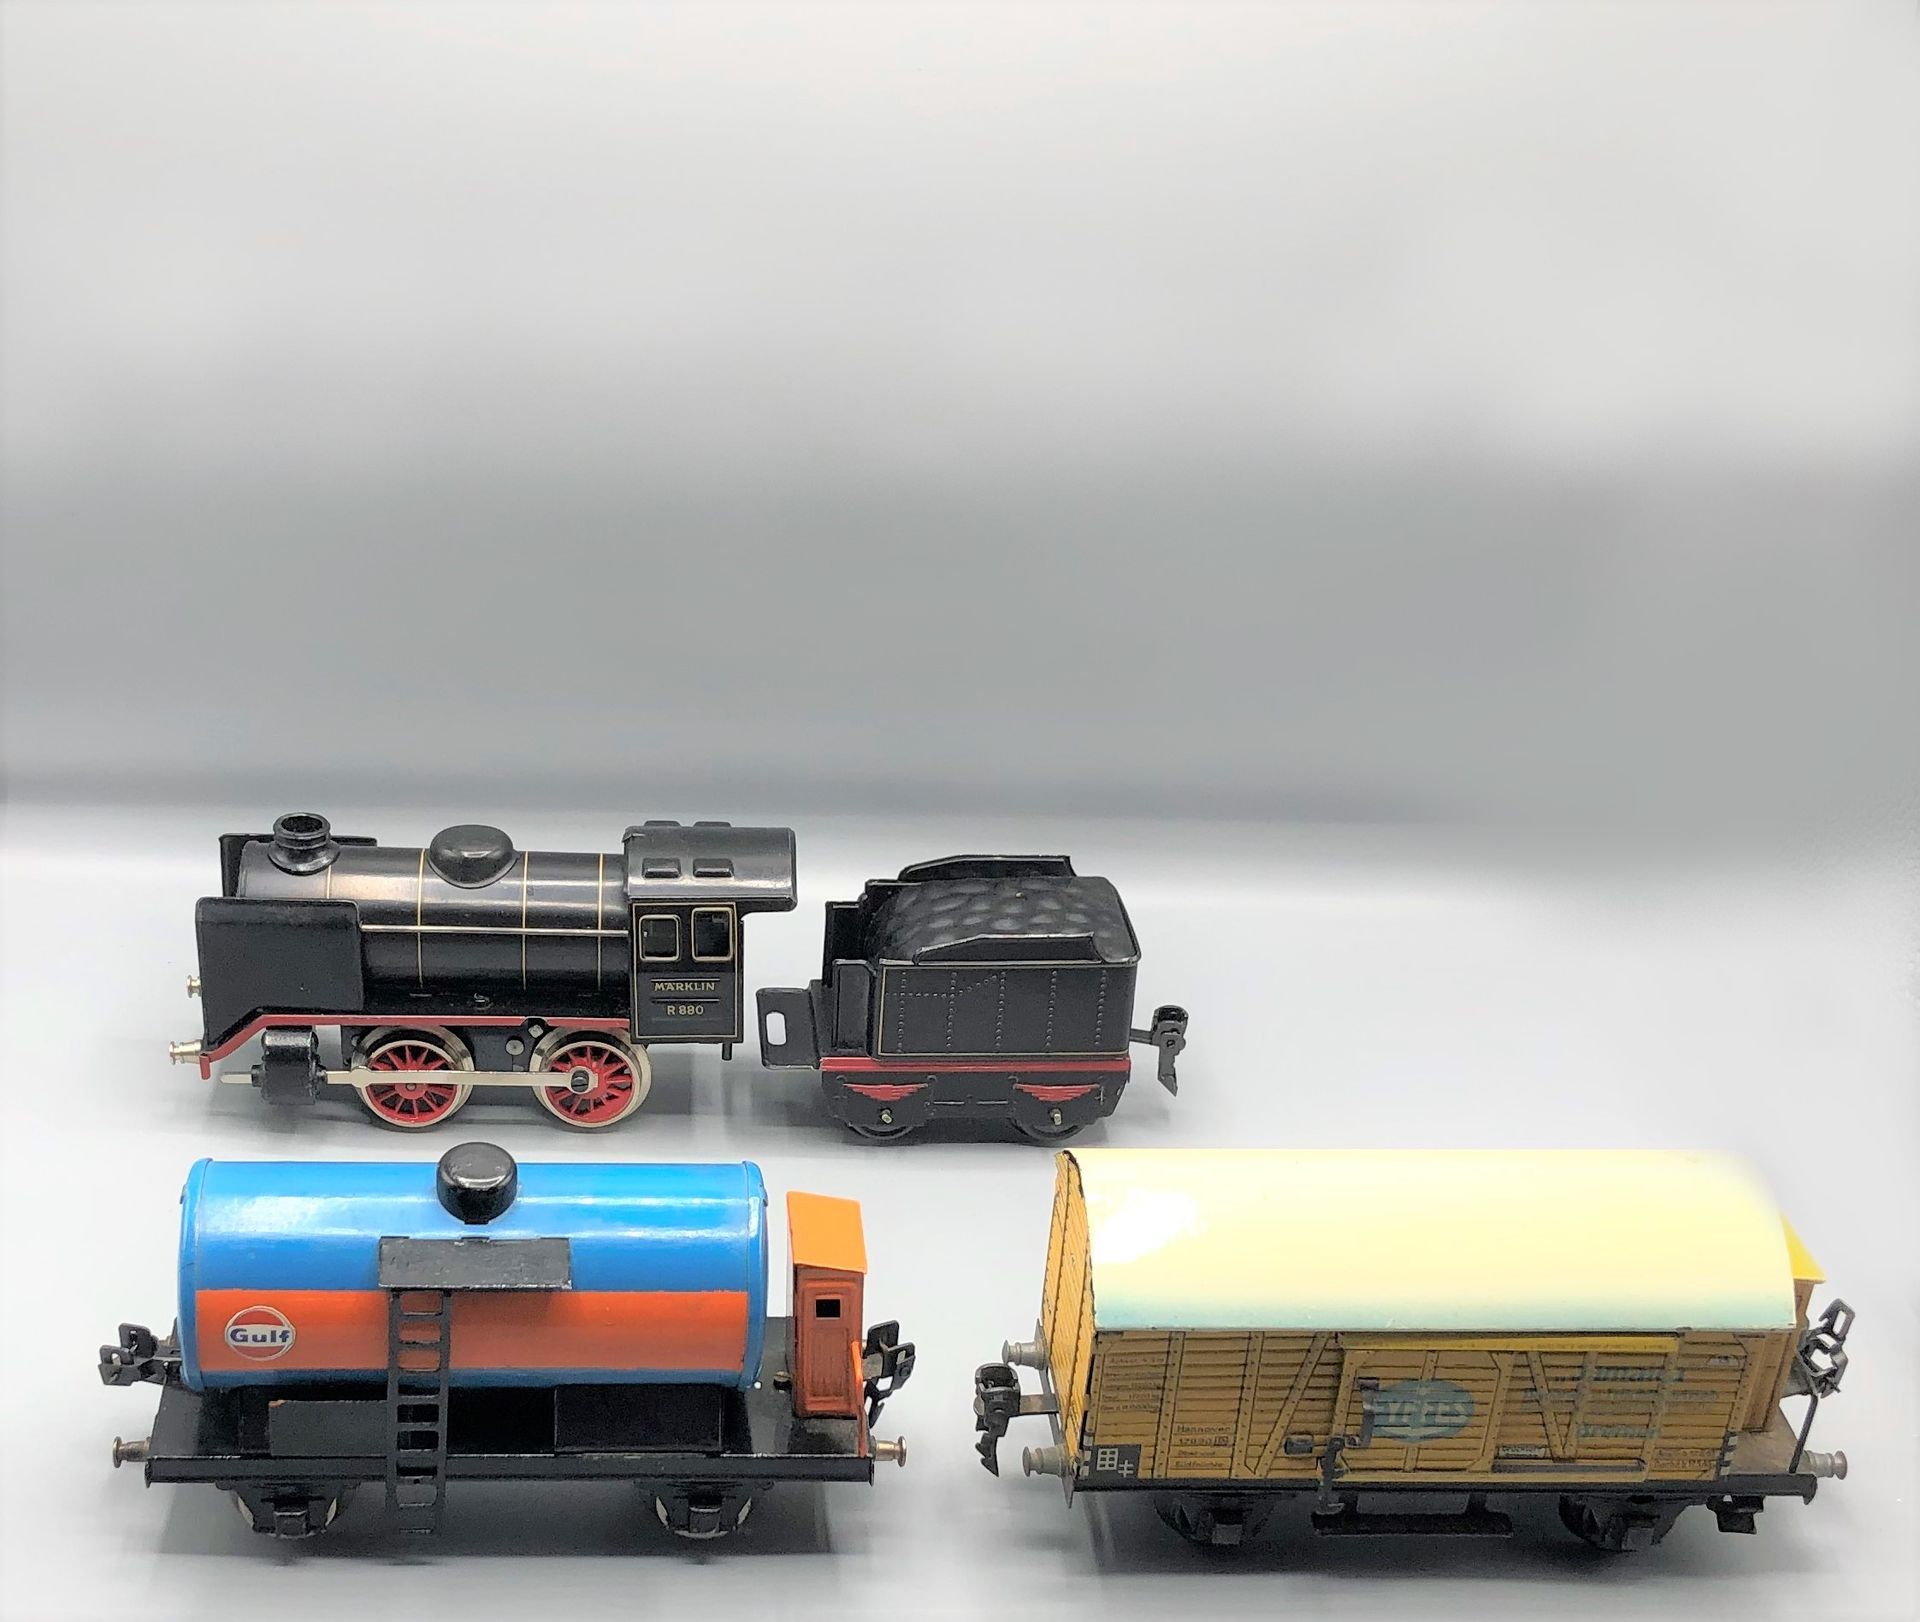 Null BING和各种-0-

由黑色020机车、带平房的坦克车、箱型车组成的机械列车



使用状况

更多信息请联系该研究。